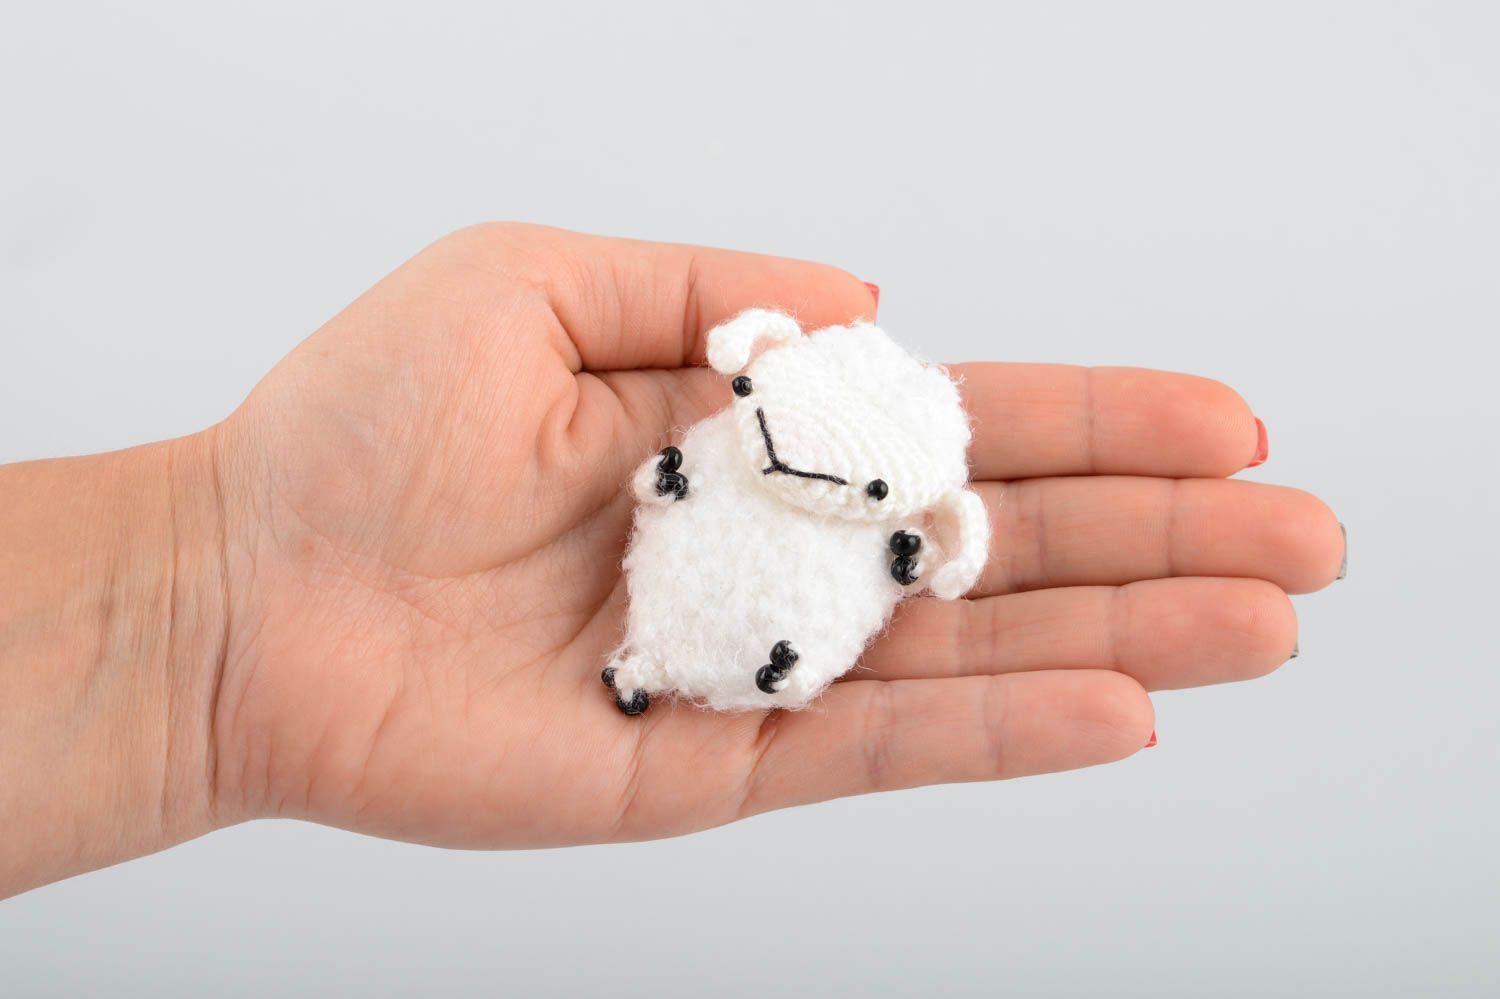 Мягкая вязаная игрушка магнит в виде овечки белая амигуруми маленькая хэнд мейд фото 5